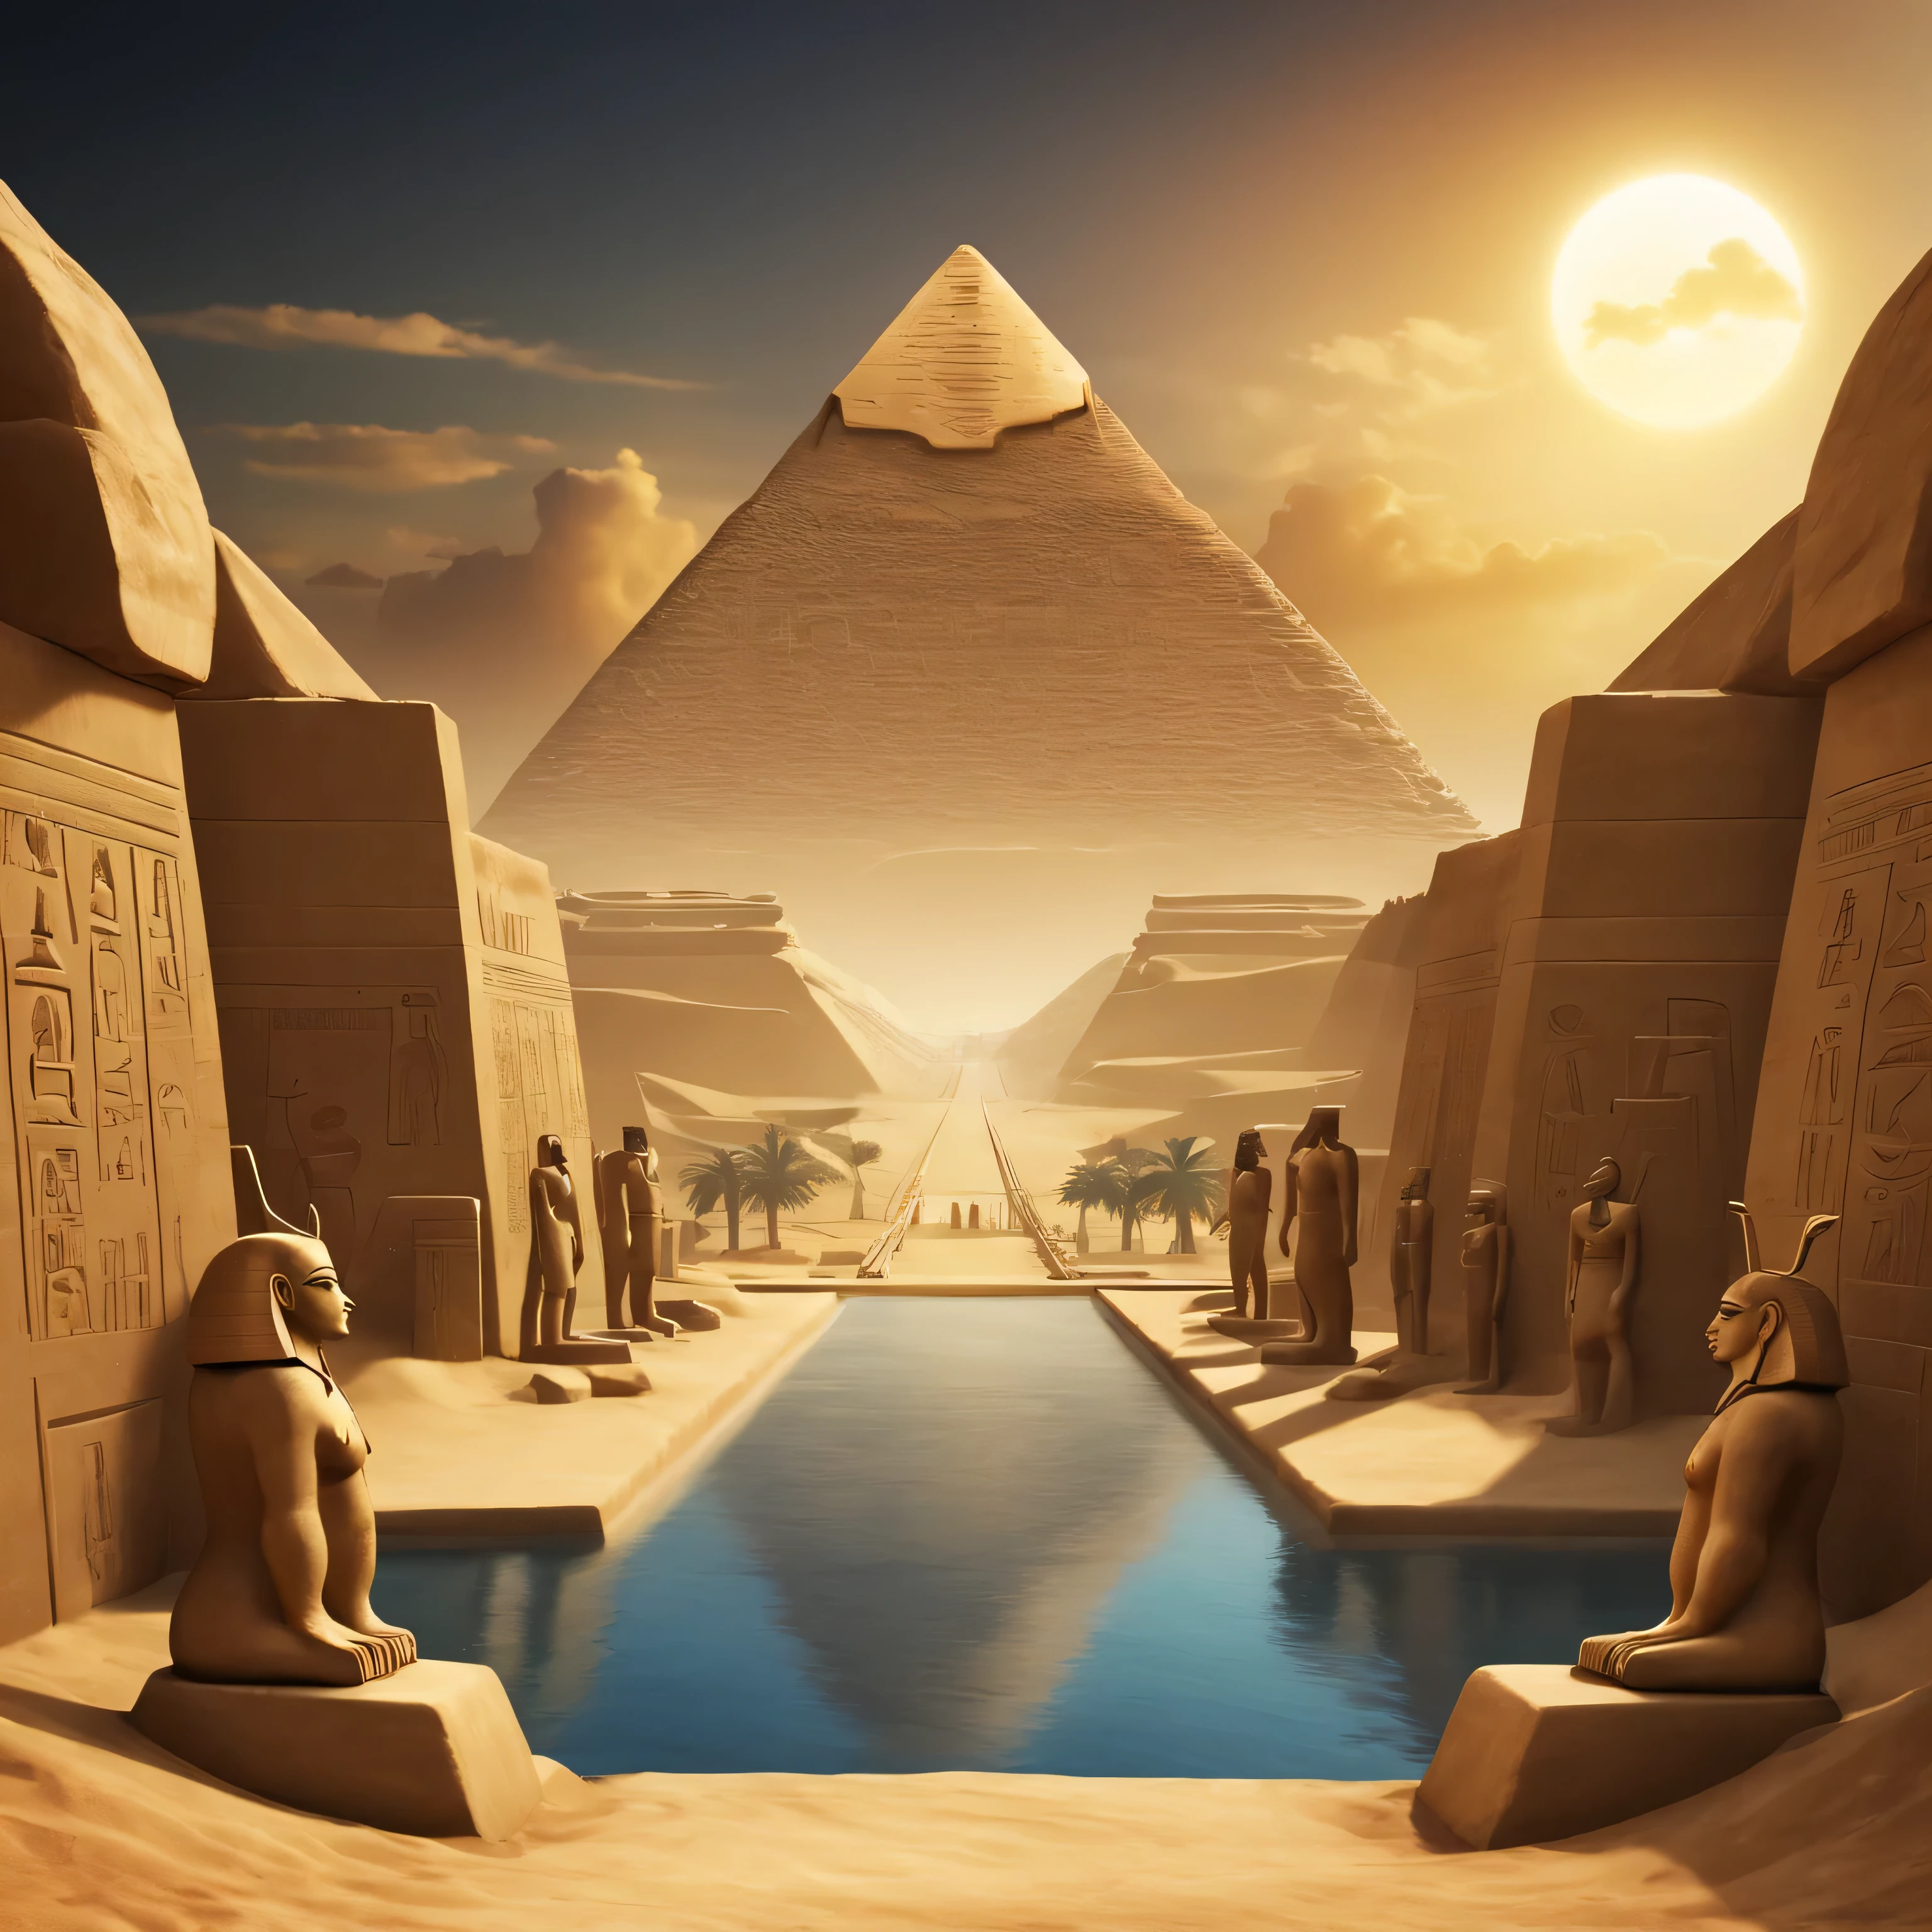 地平線上可見古埃及所有主神的景觀. 背景和頁邊應使用古埃及特有的符號和形狀. 至少4個神...